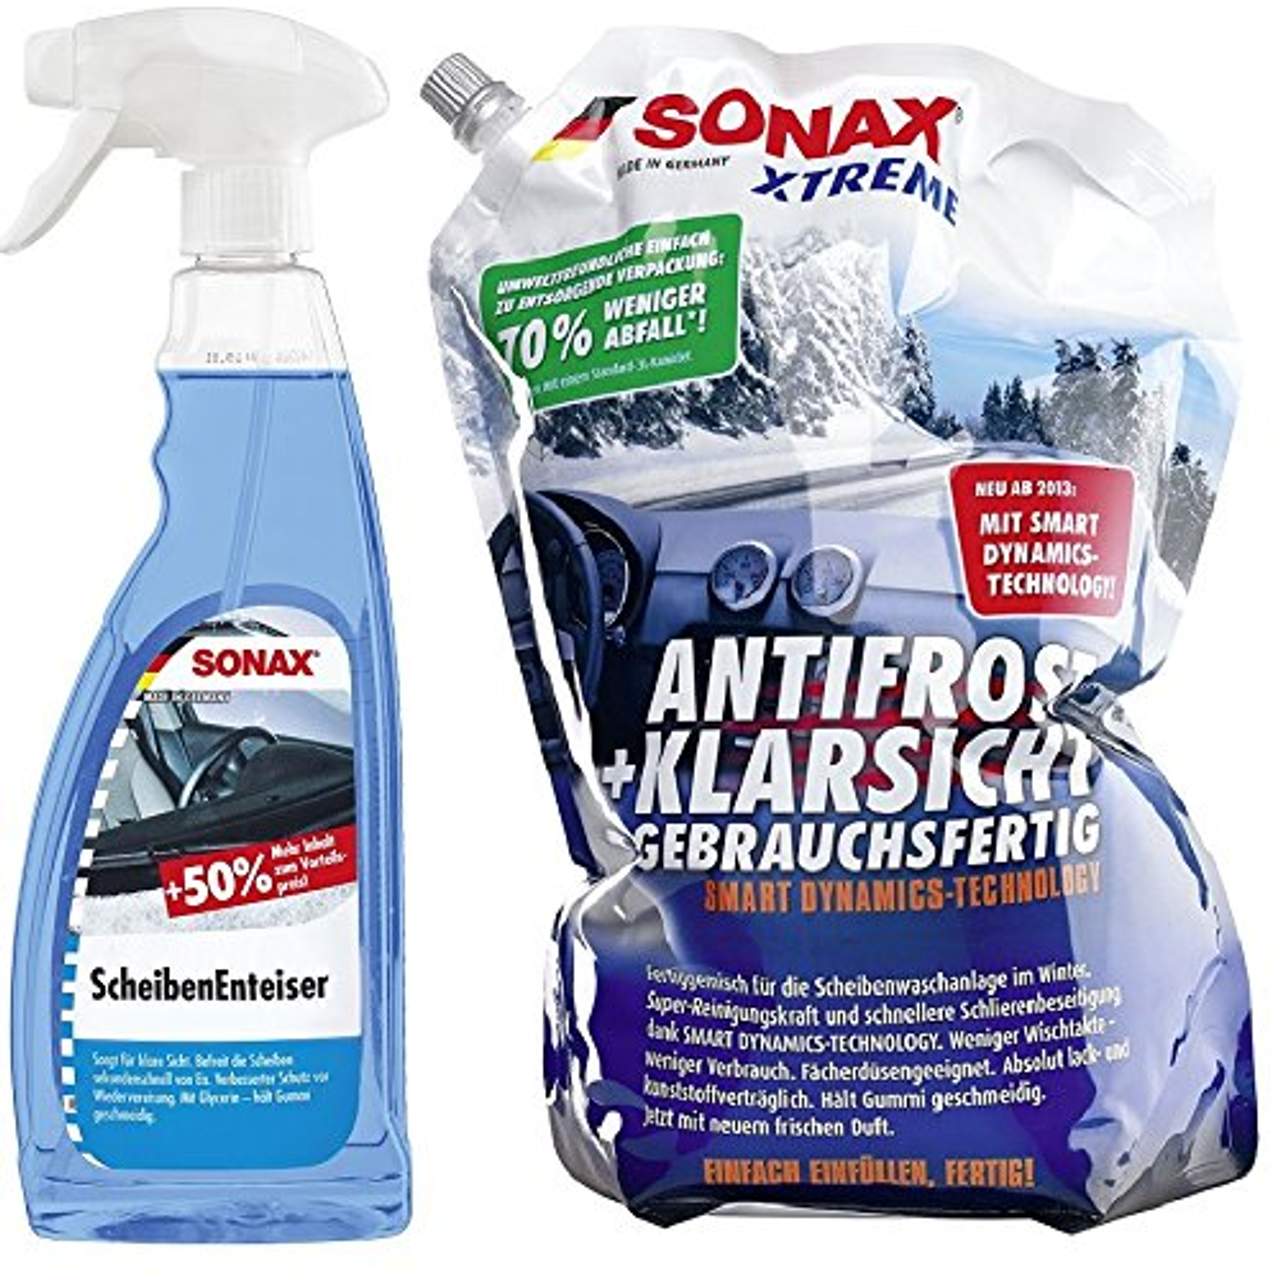 Sonax Xtreme Winter Set Gebrauchsfertig AntiFrost & KlarSicht